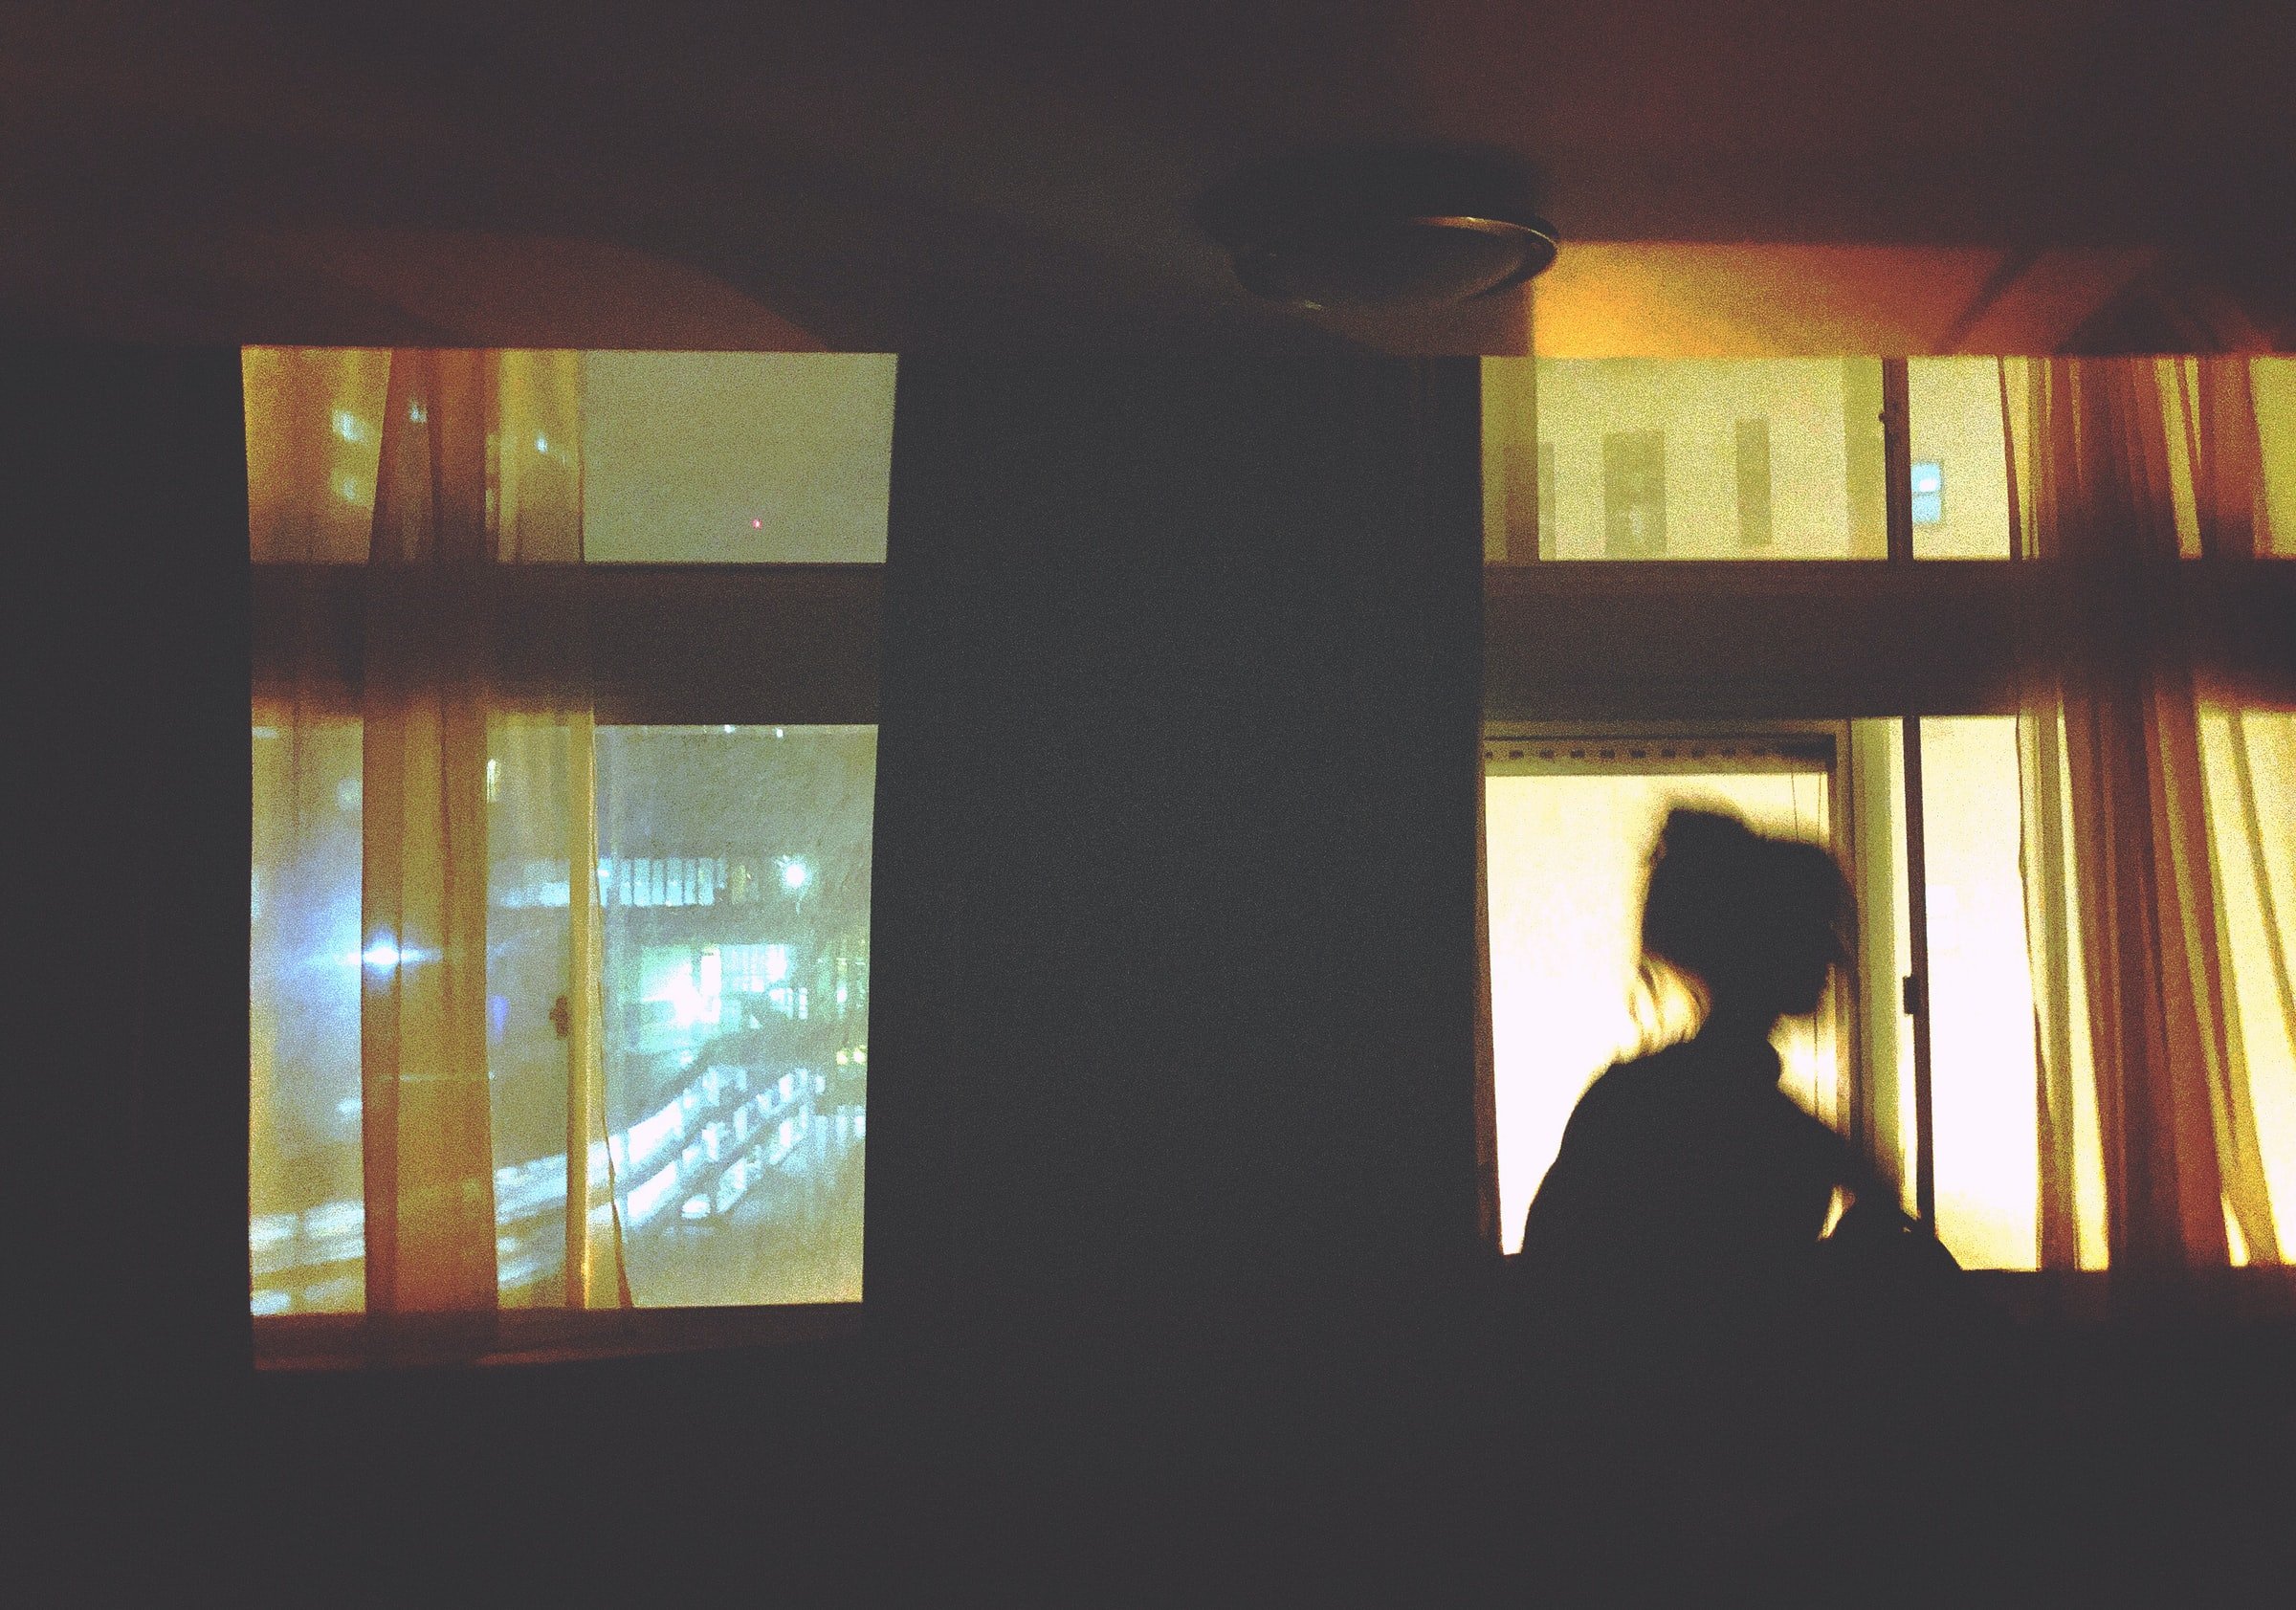 Die Silhouette einer Frau in einem dunklen Raum. | Quelle: Unsplash